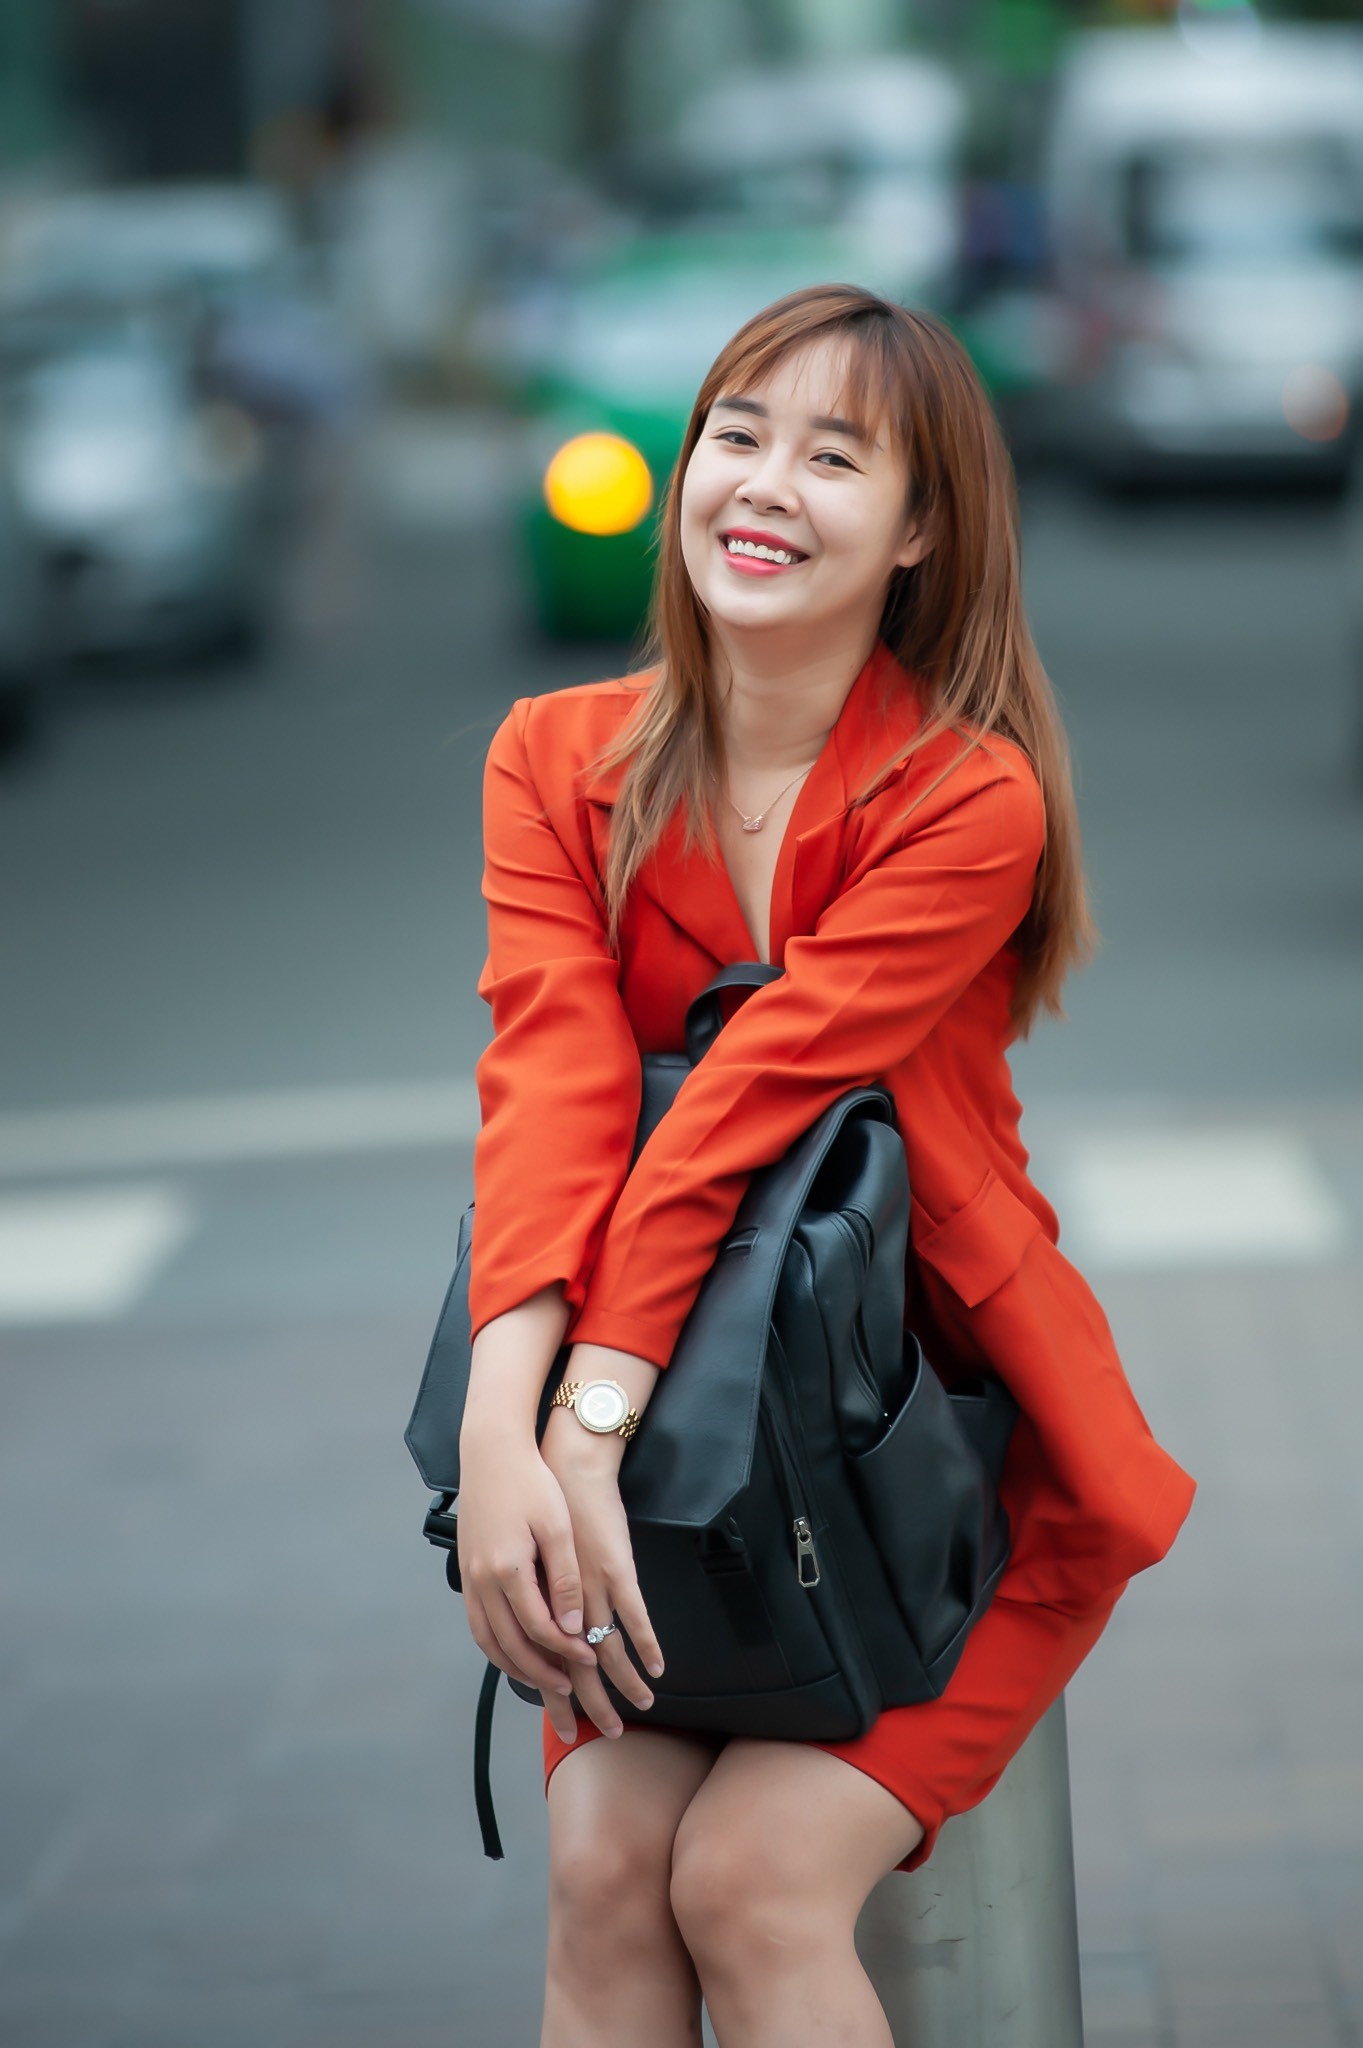 Phạm Huỳnh Hoa Lài – Nữ biên tập ghi điểm với phong cách thời trang đa dạng - ảnh 1